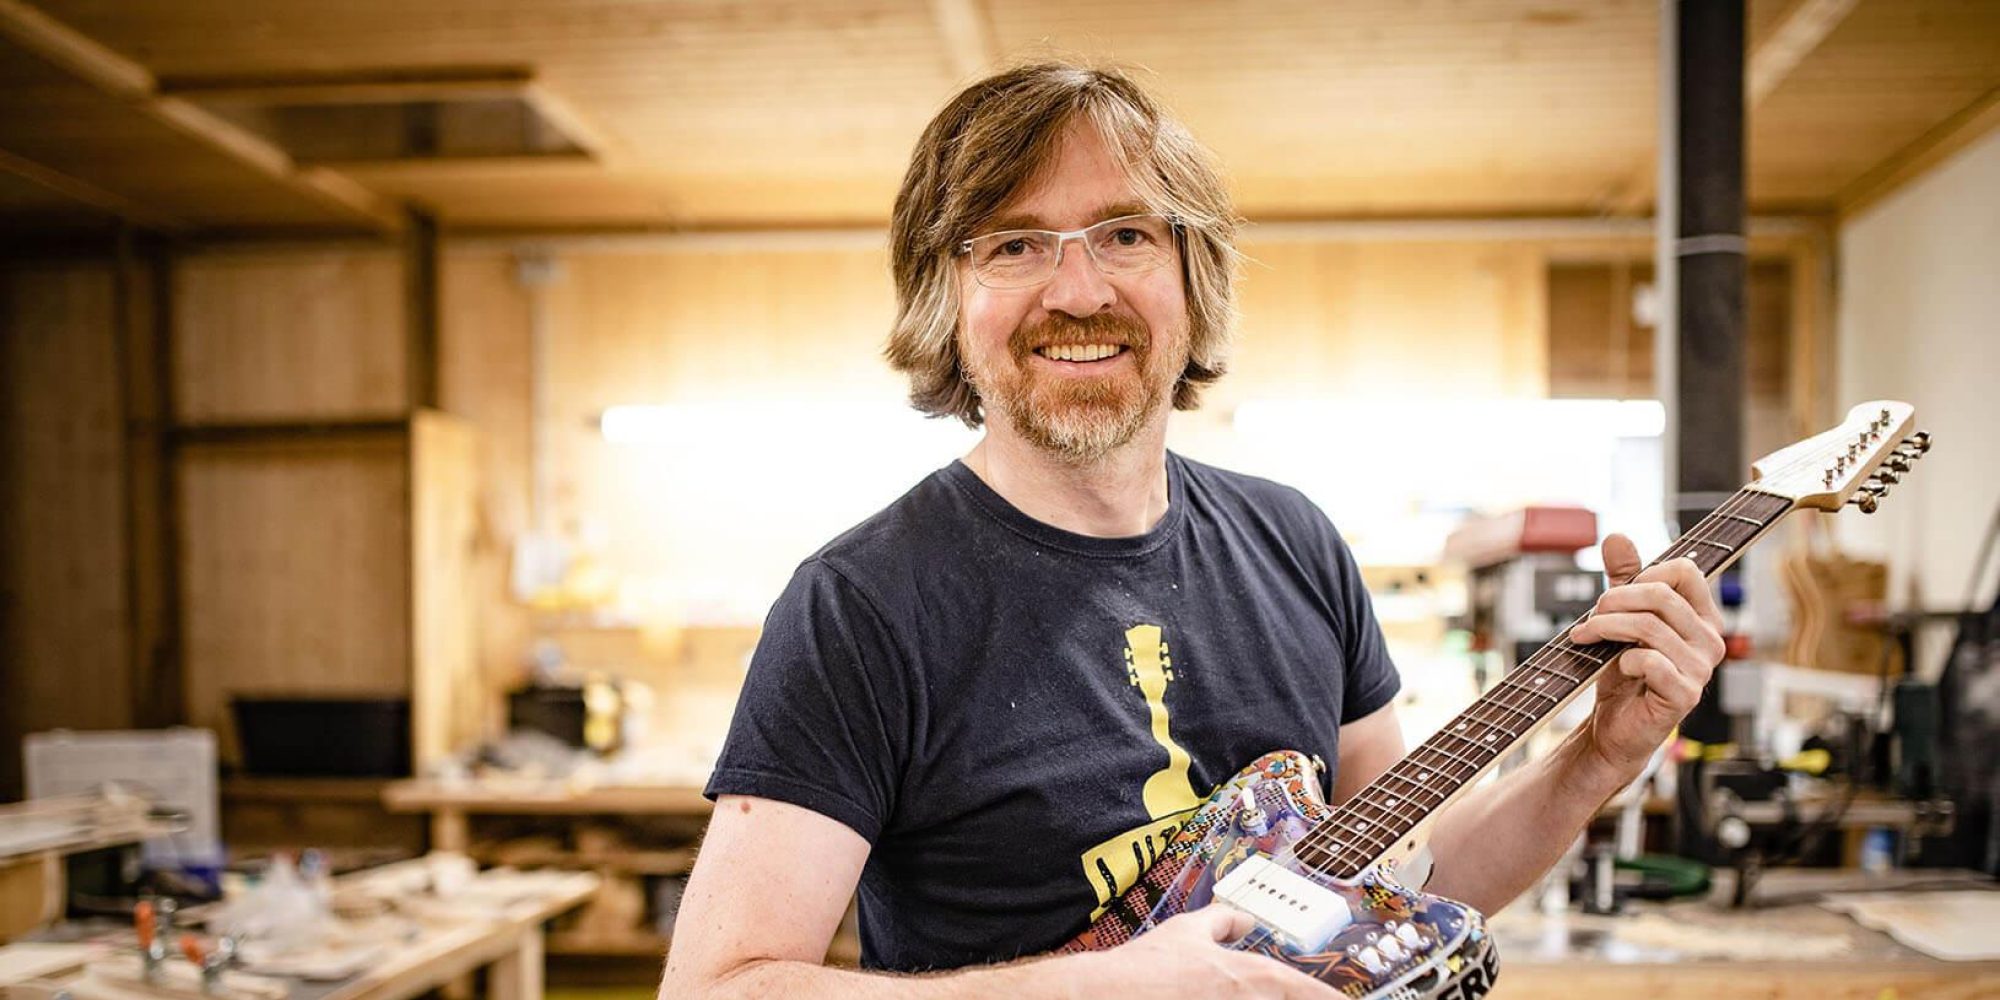 Ein Mann steht in einer Werkstatt und schaut lächelnd in die Kamera. In der Hand hält er eine bunte E-Gitarre.